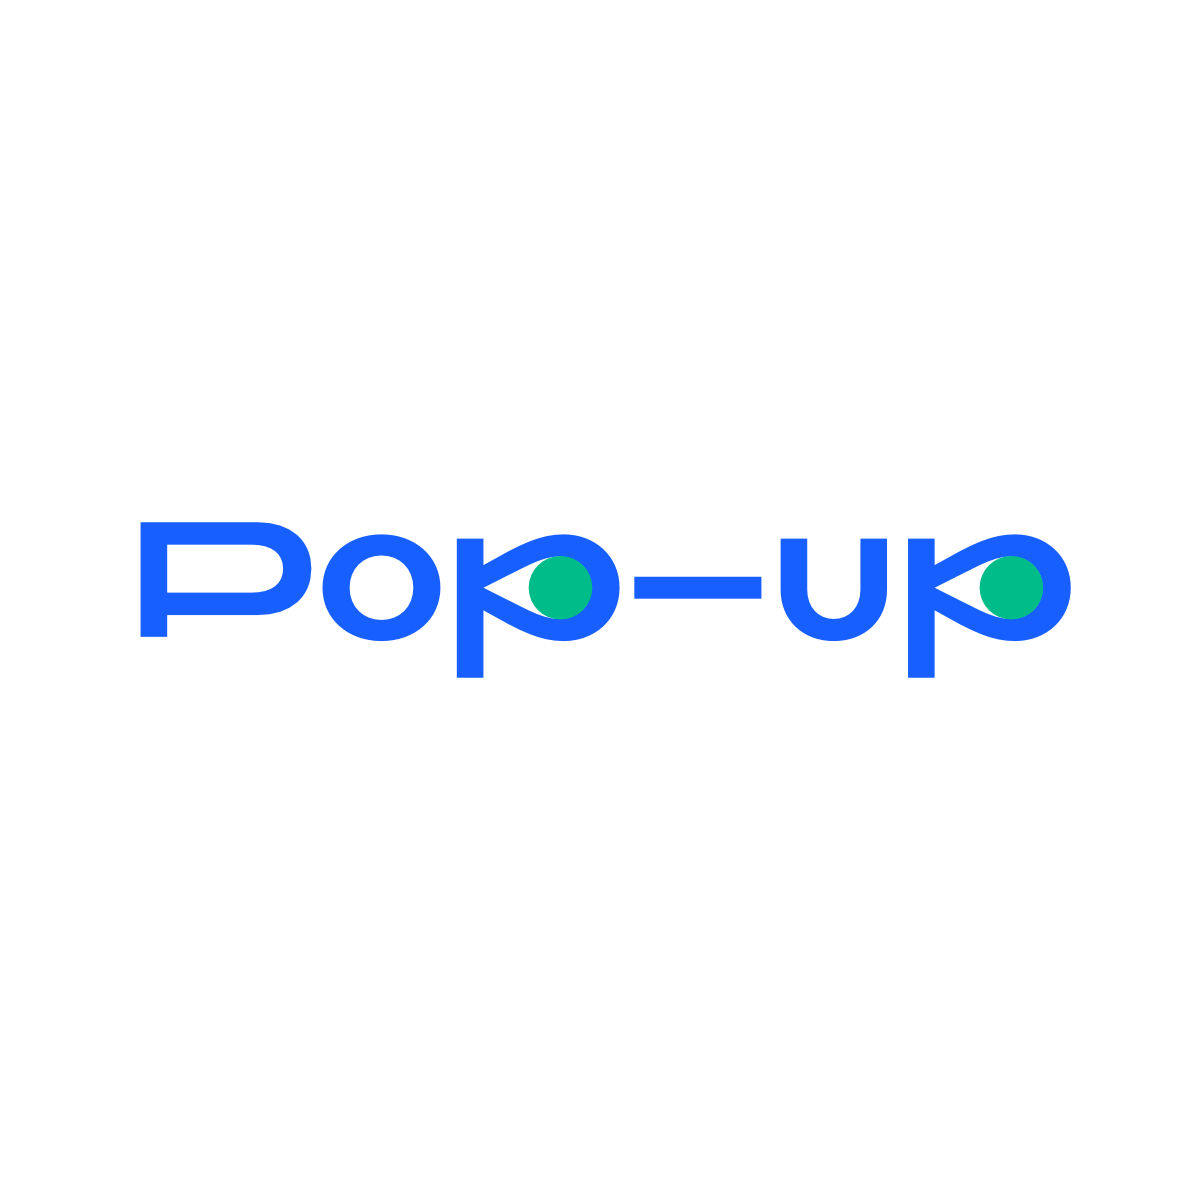 Design Pop-up Liberec